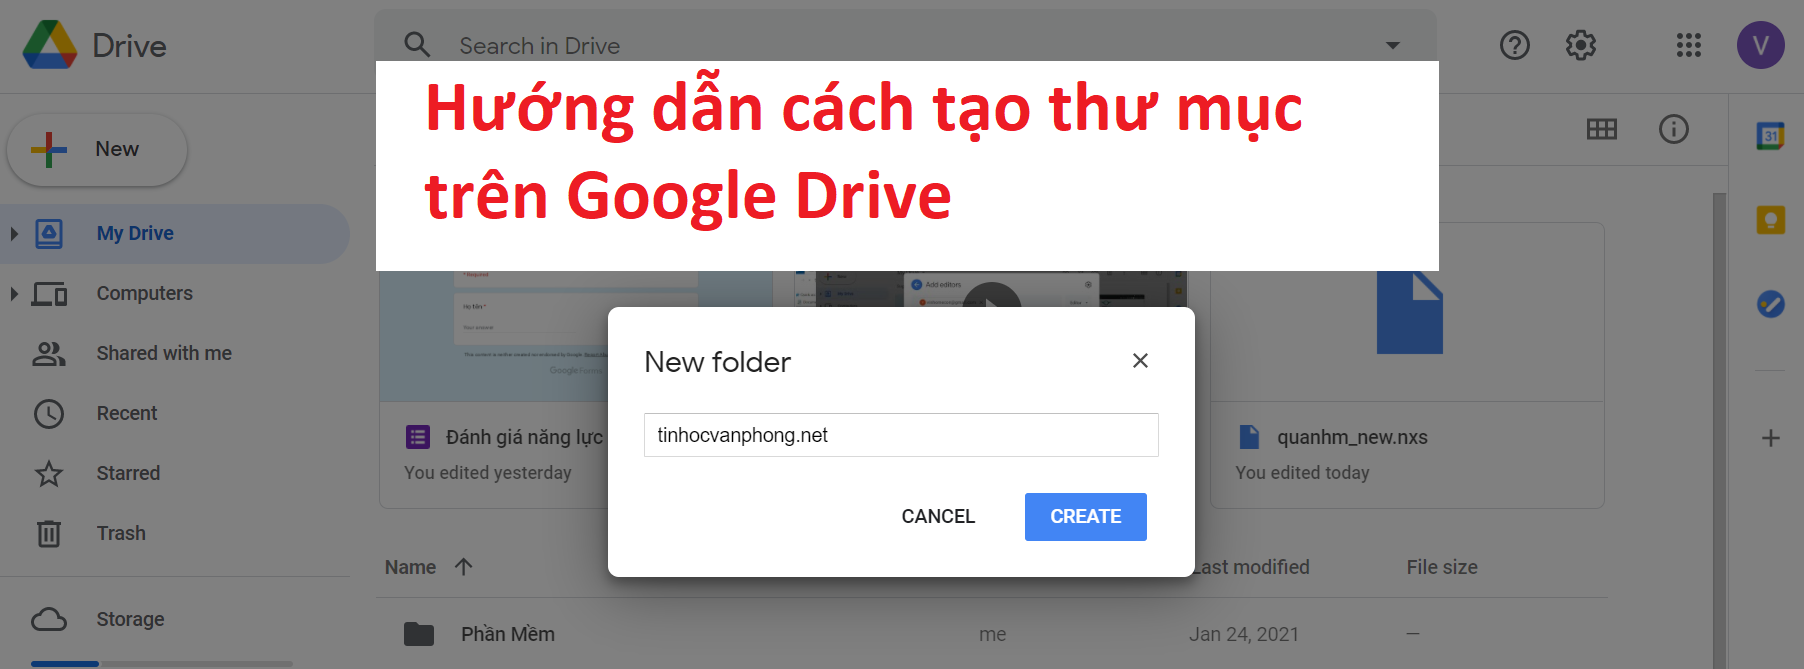 【Hướng Dẫn】2 Cách tạo thư mục trên Google Drive - Google Drive